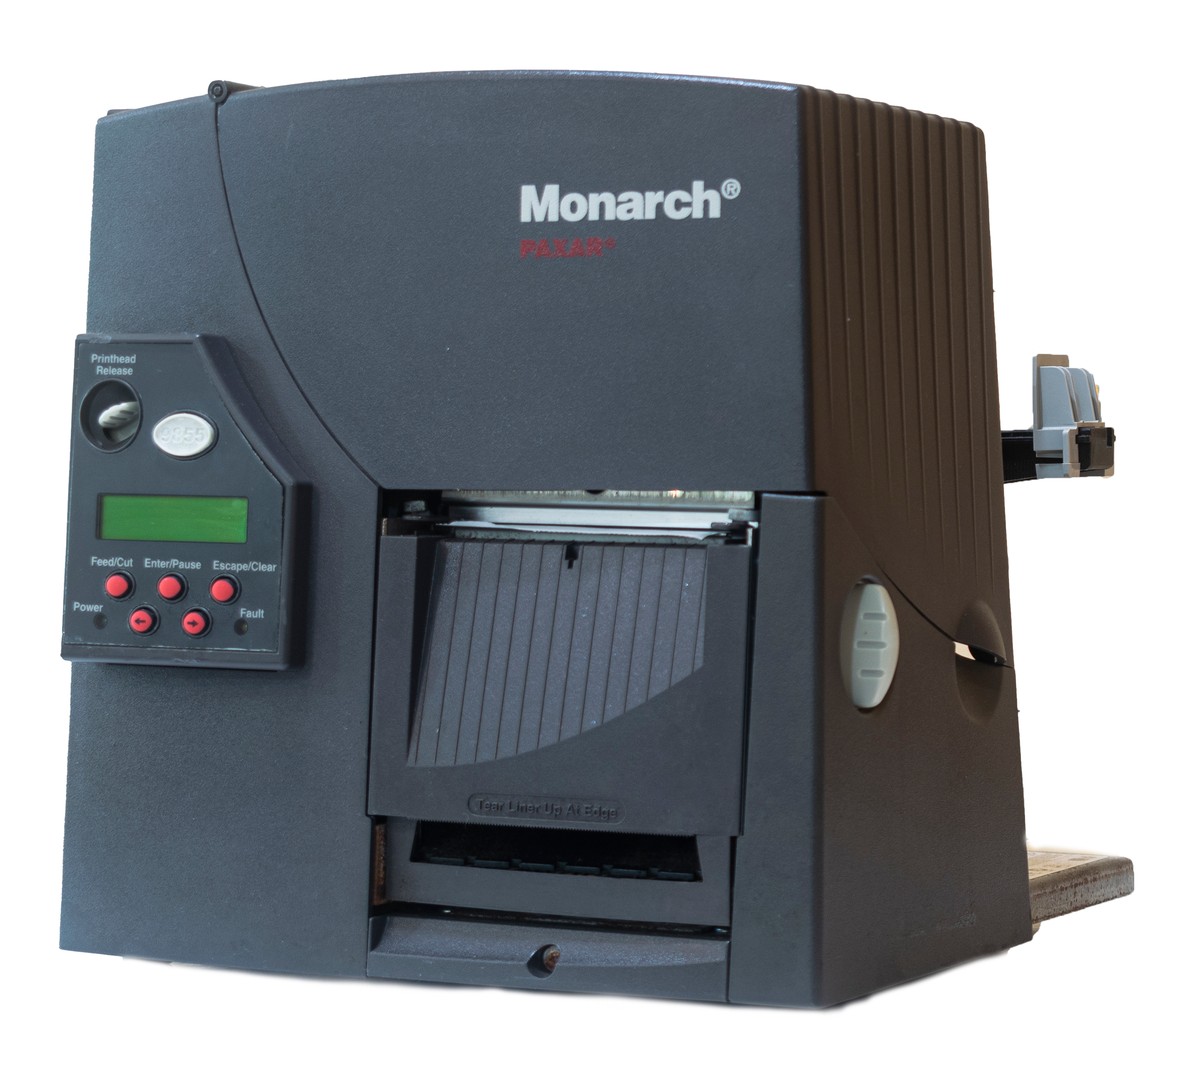 impresoras y scanners - Impresora de etiqueta Monarch 9855 0